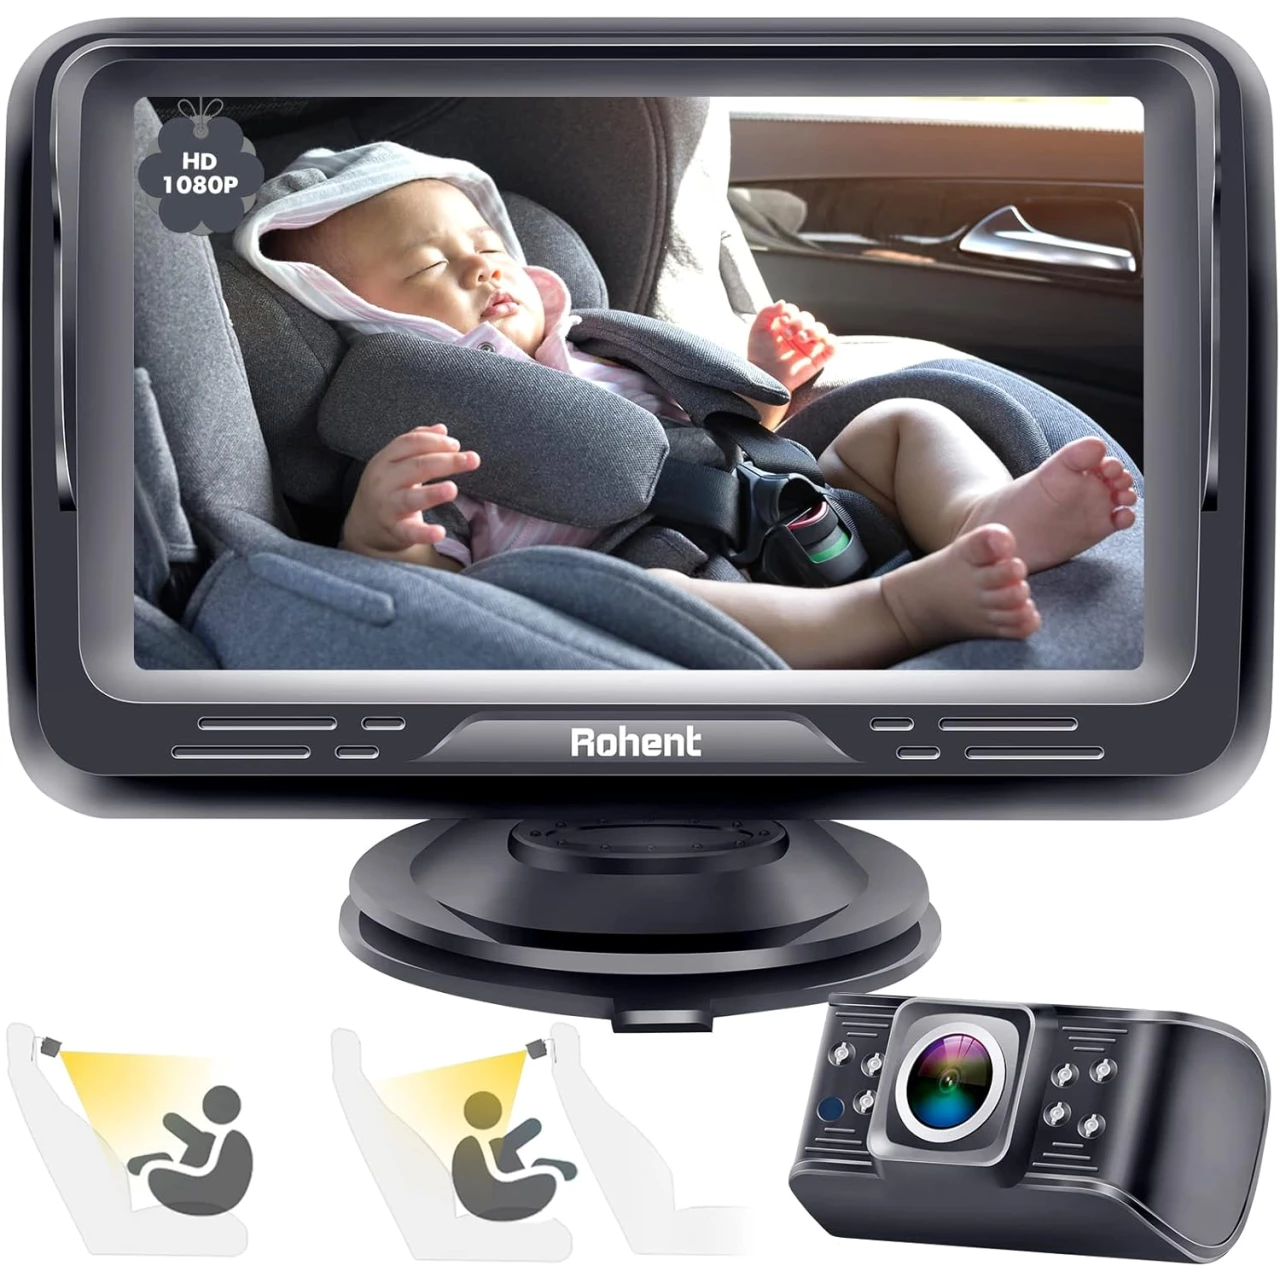 Rohent Baby Car Camera HD 1080P - 360° Rotating Crystal Night Vision Car Baby Monitor